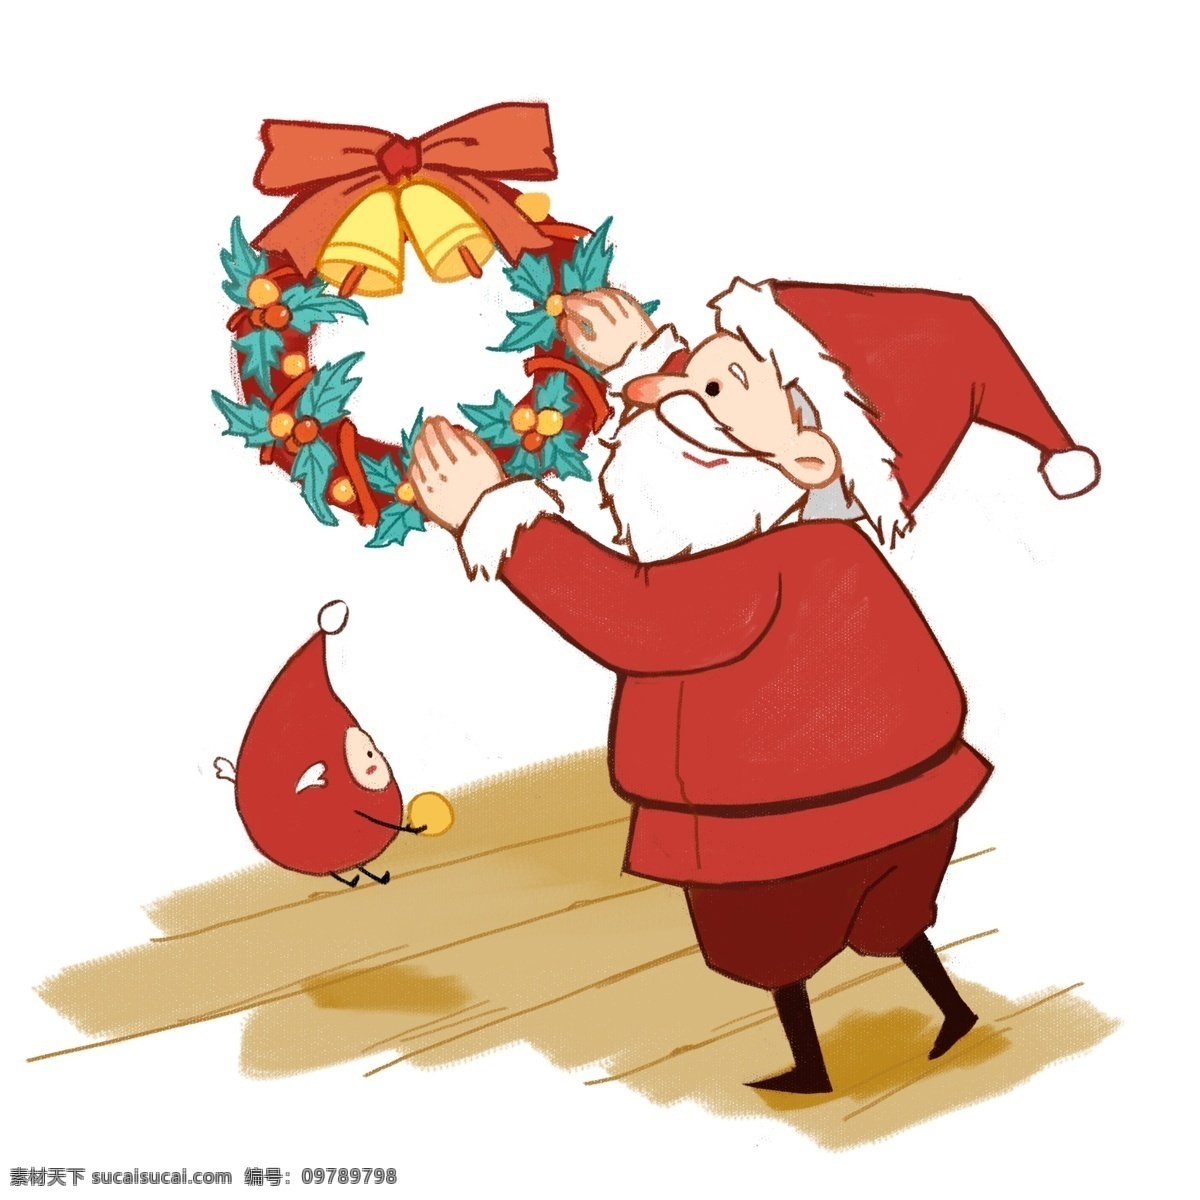 圣诞节 挂花 环 圣诞老人 圣诞 节日 男孩女孩系列 礼物 传统习俗 可爱 卡通风 童话风格 插画 壁纸 装饰画